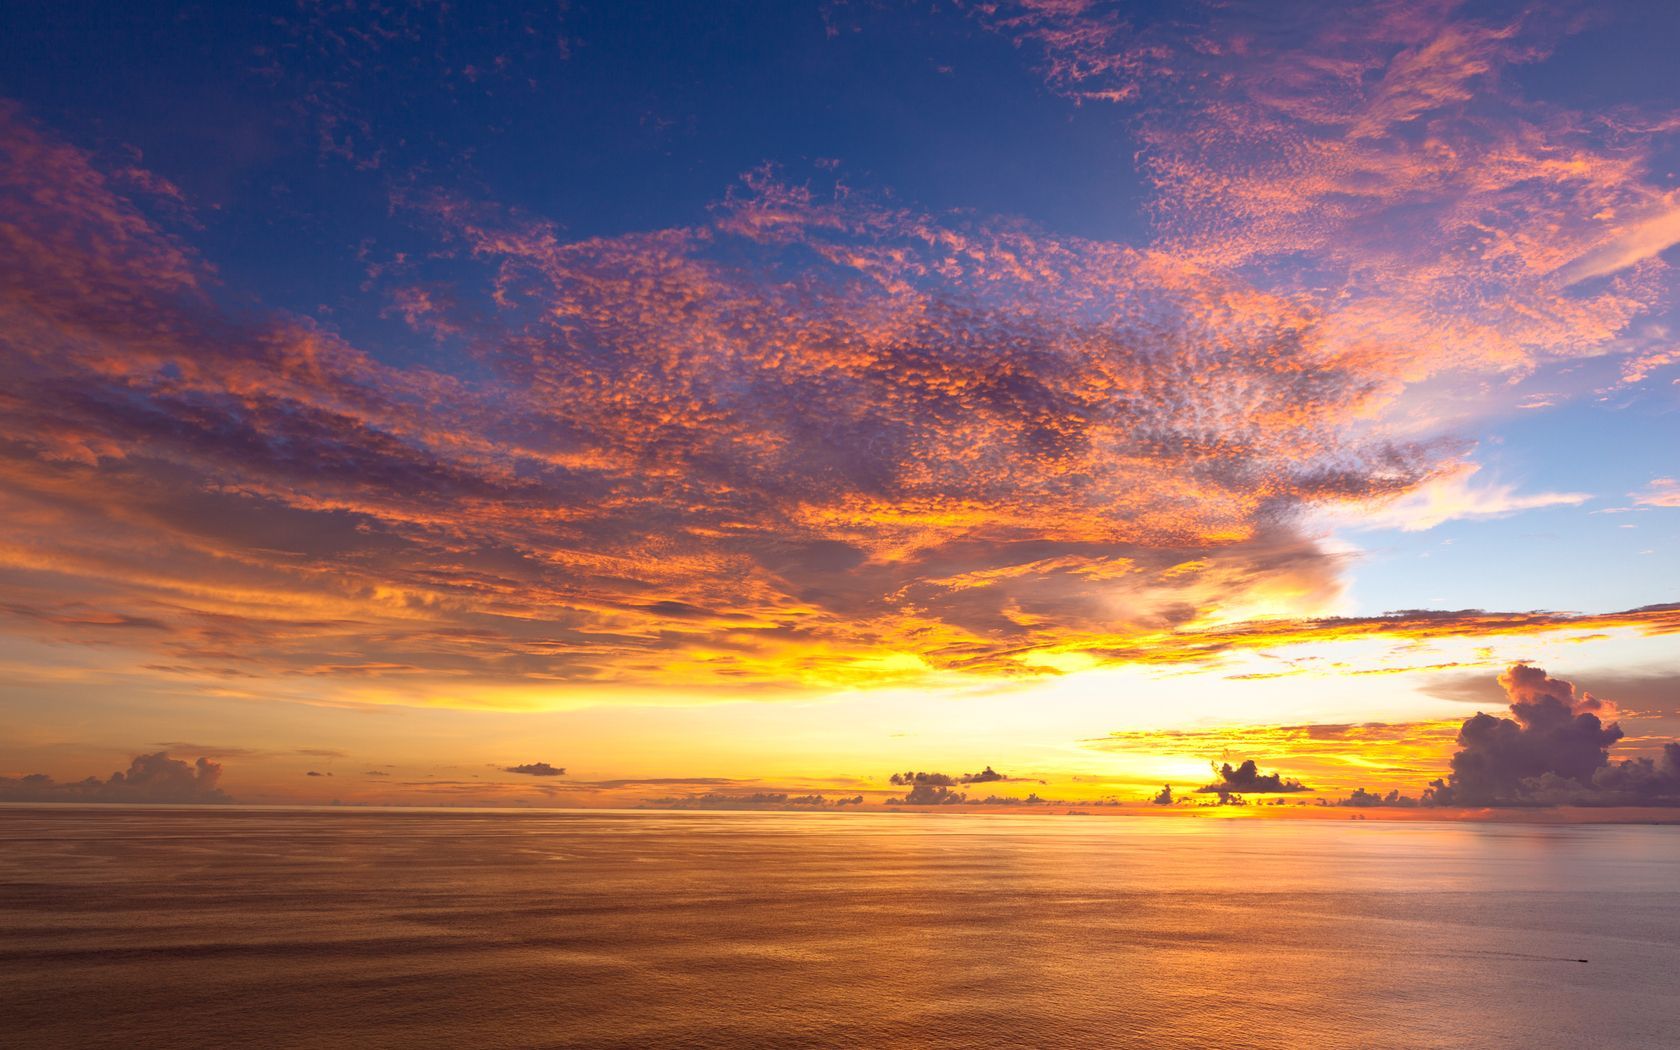 horizontal. Bali sunset, Sunset wallpaper, Bali island